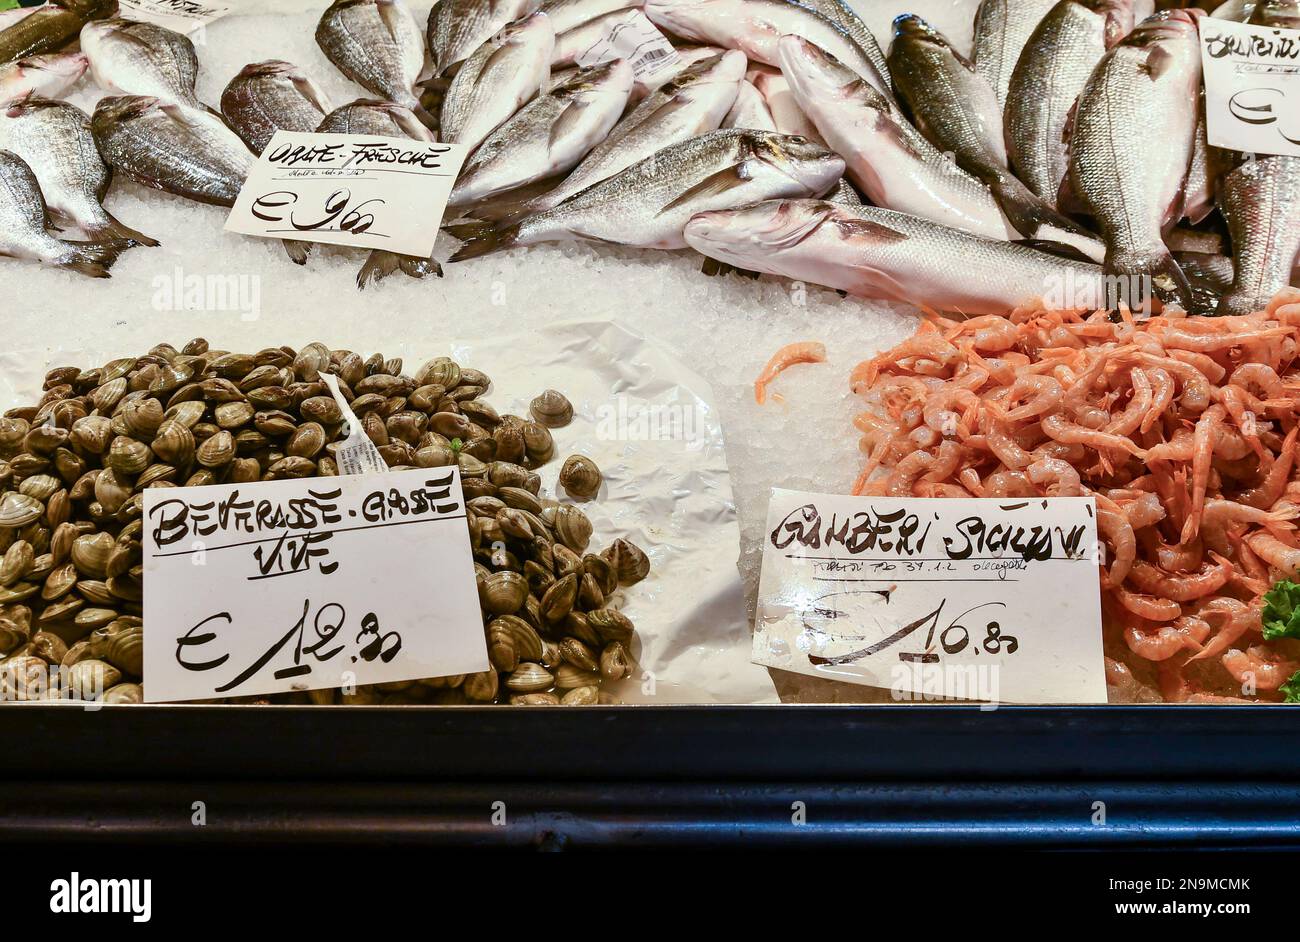 Primo piano delle catture della giornata al mercato del pesce di Rialto con gamberi, vongole e orate di mare, Venezia, Veneto, Italia Foto Stock